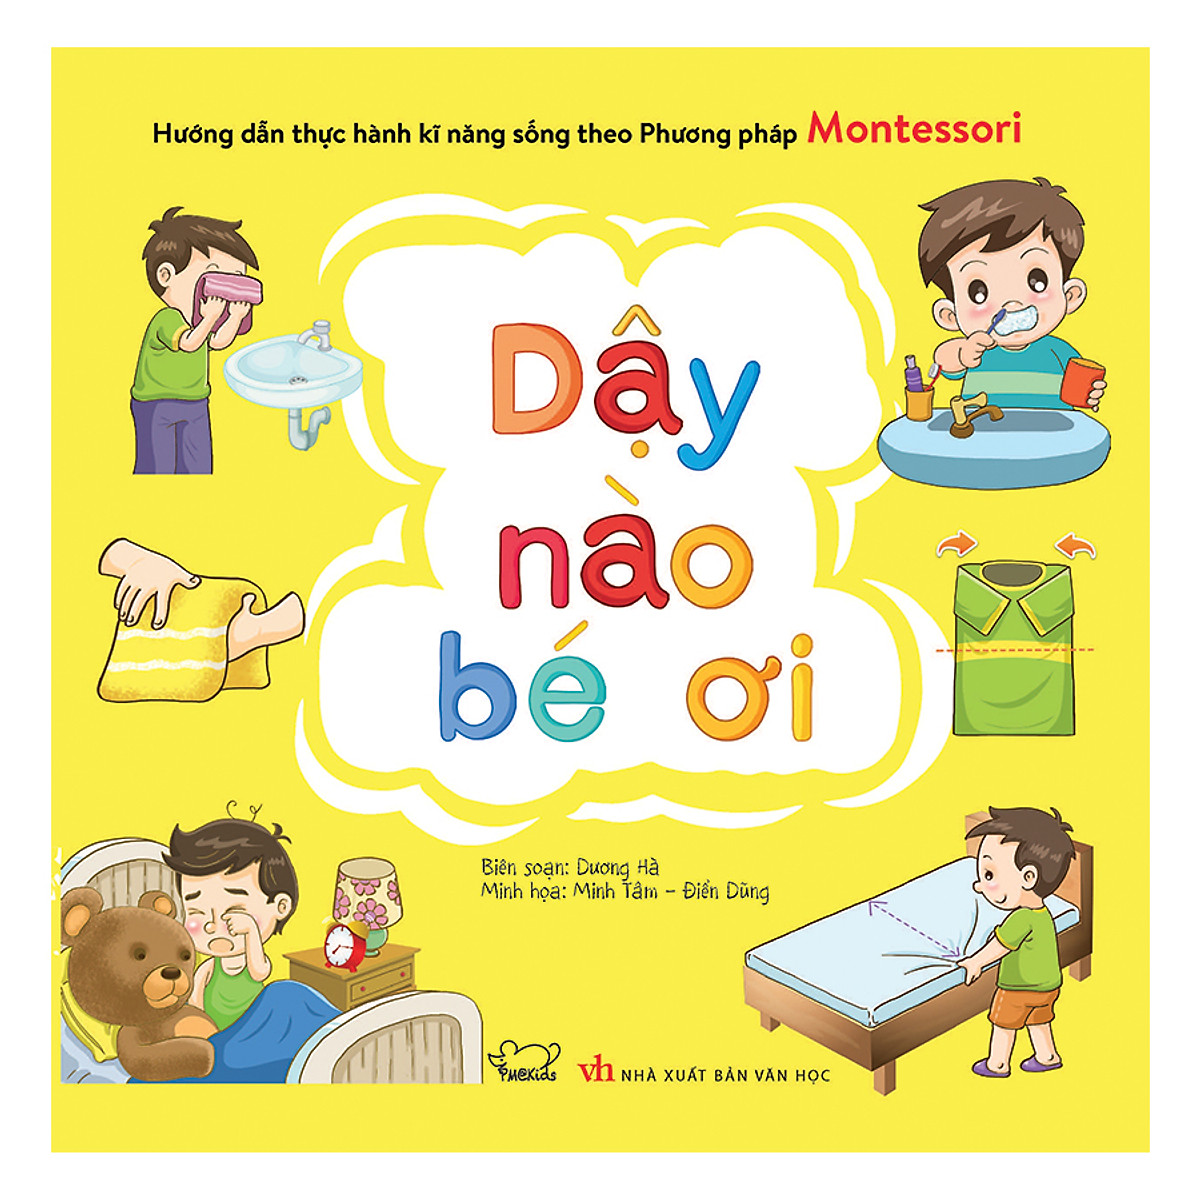 Hướng Dẫn Thực Hành Kĩ Năng Sống Theo Phương Pháp Montessori - Dậy Nào Bé Ơi PDF